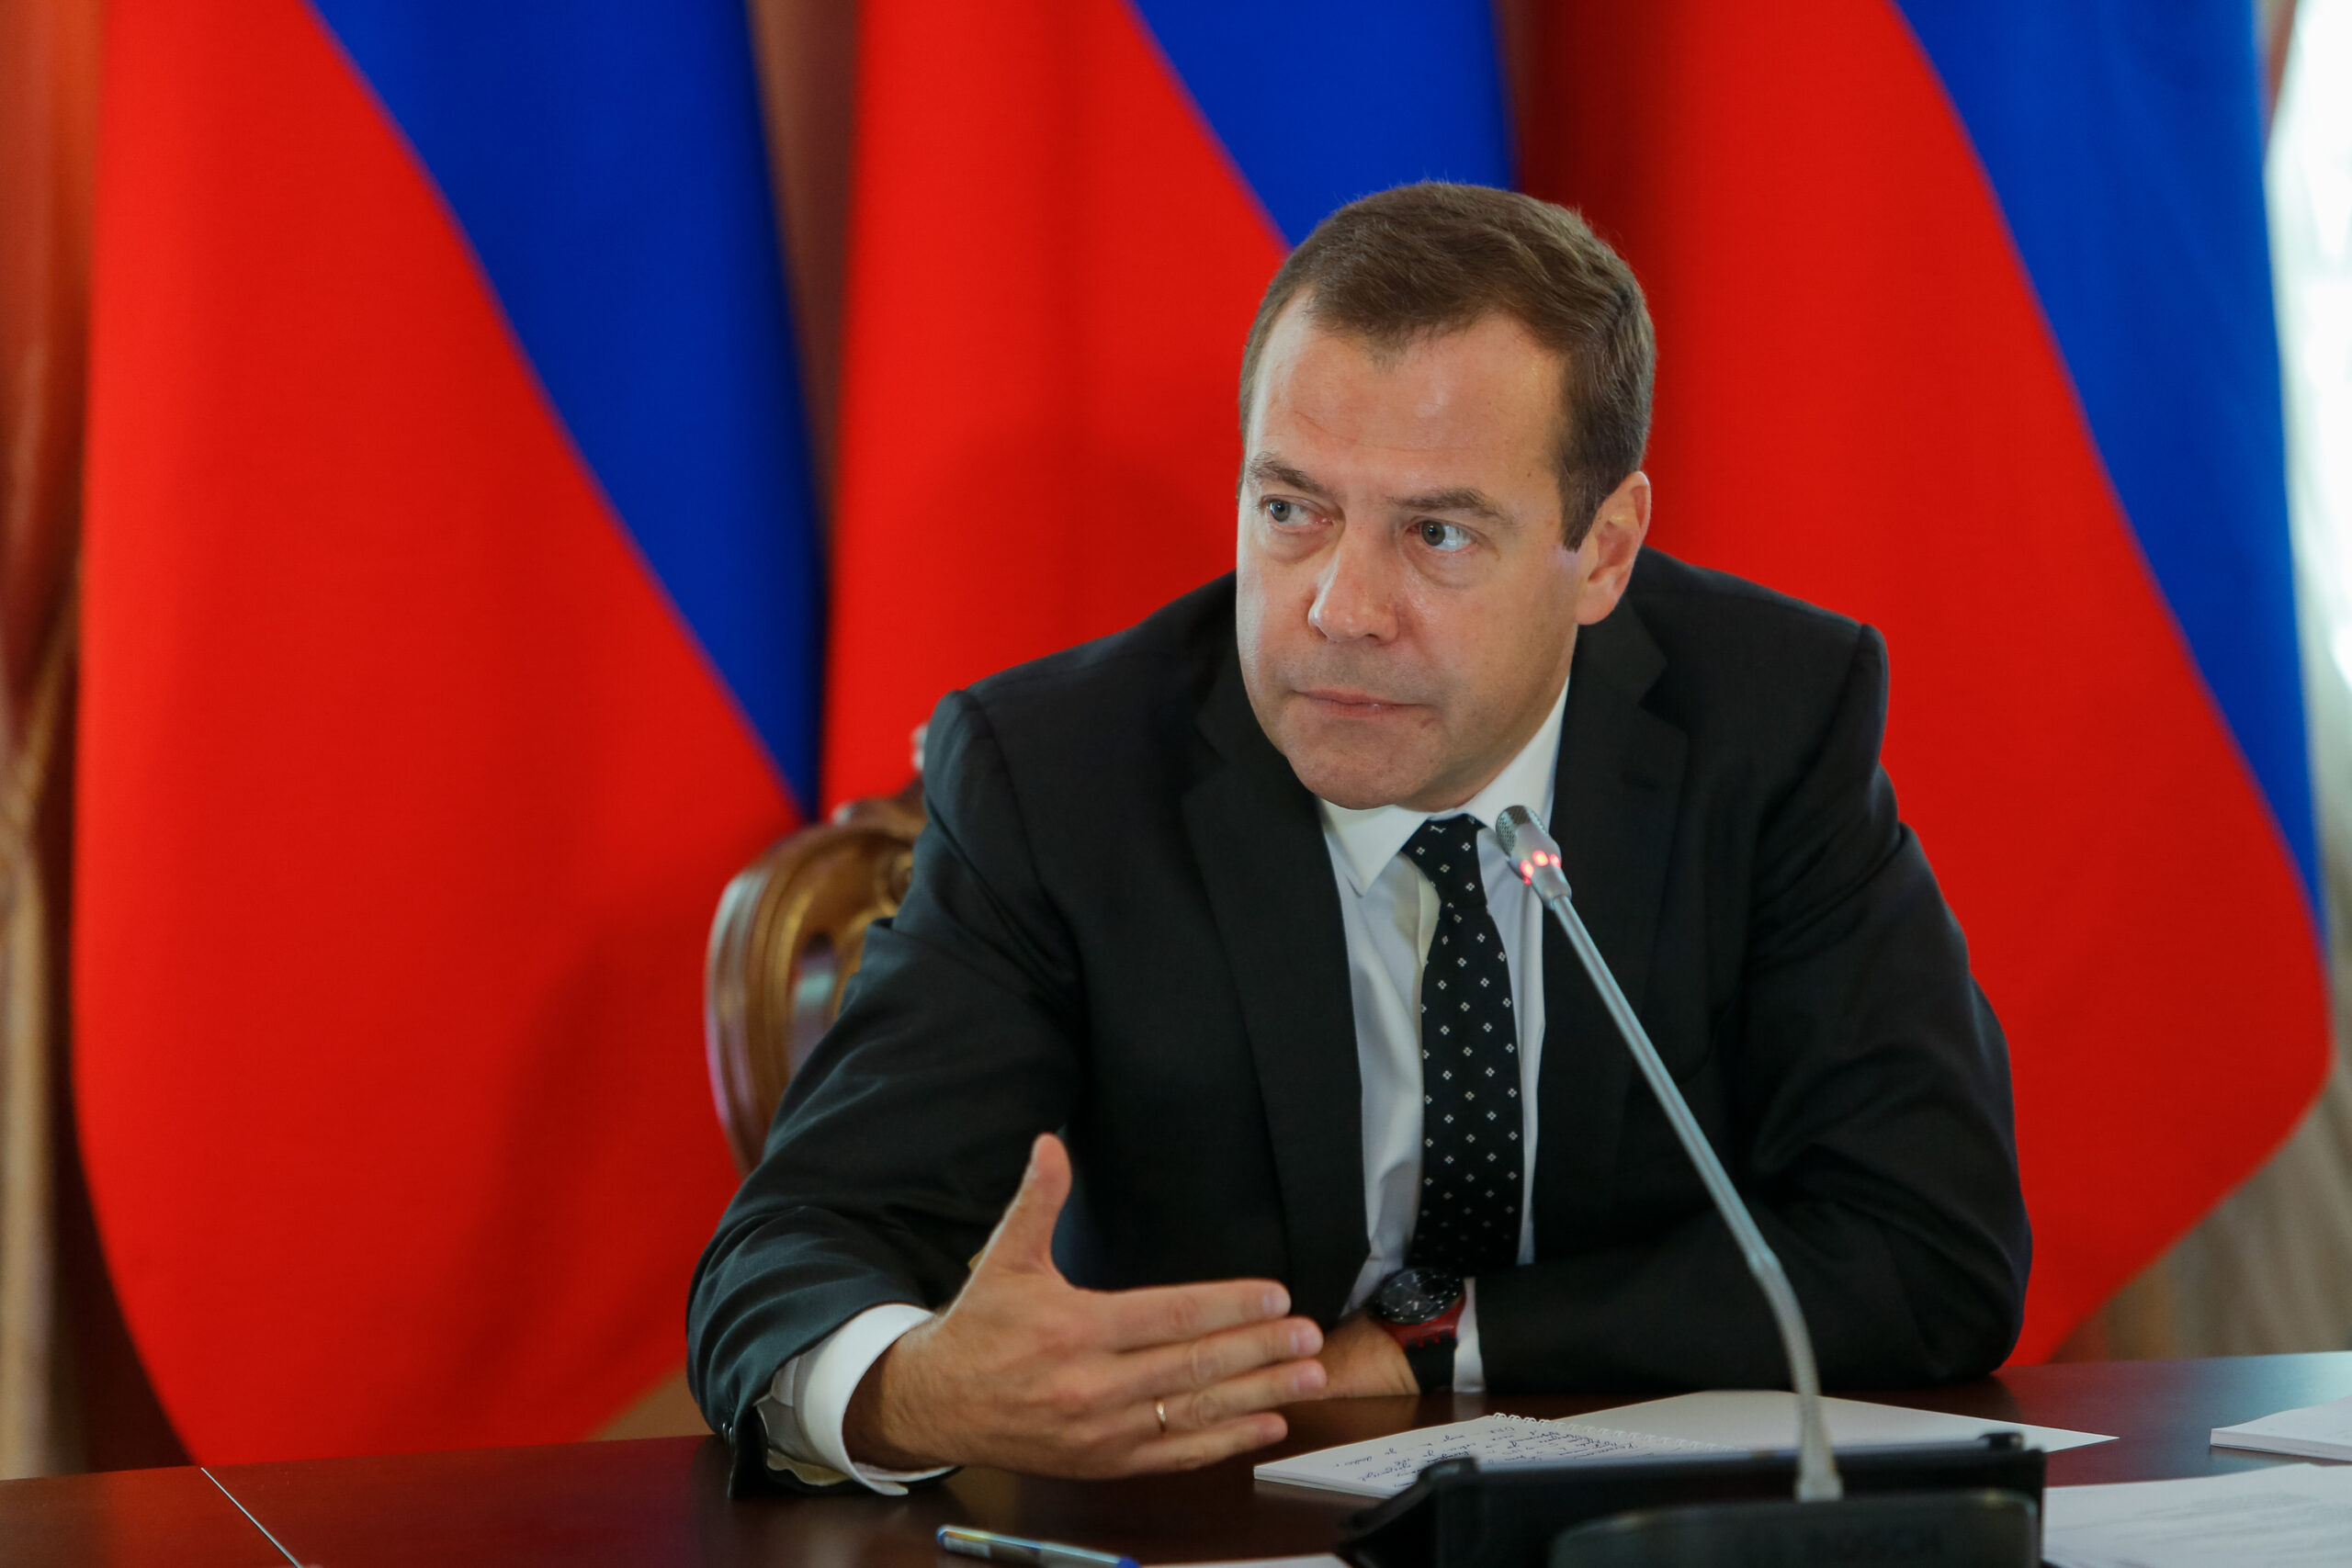 Медведев заявил о риске масштабного продовольственного кризиса из-за санкций против России